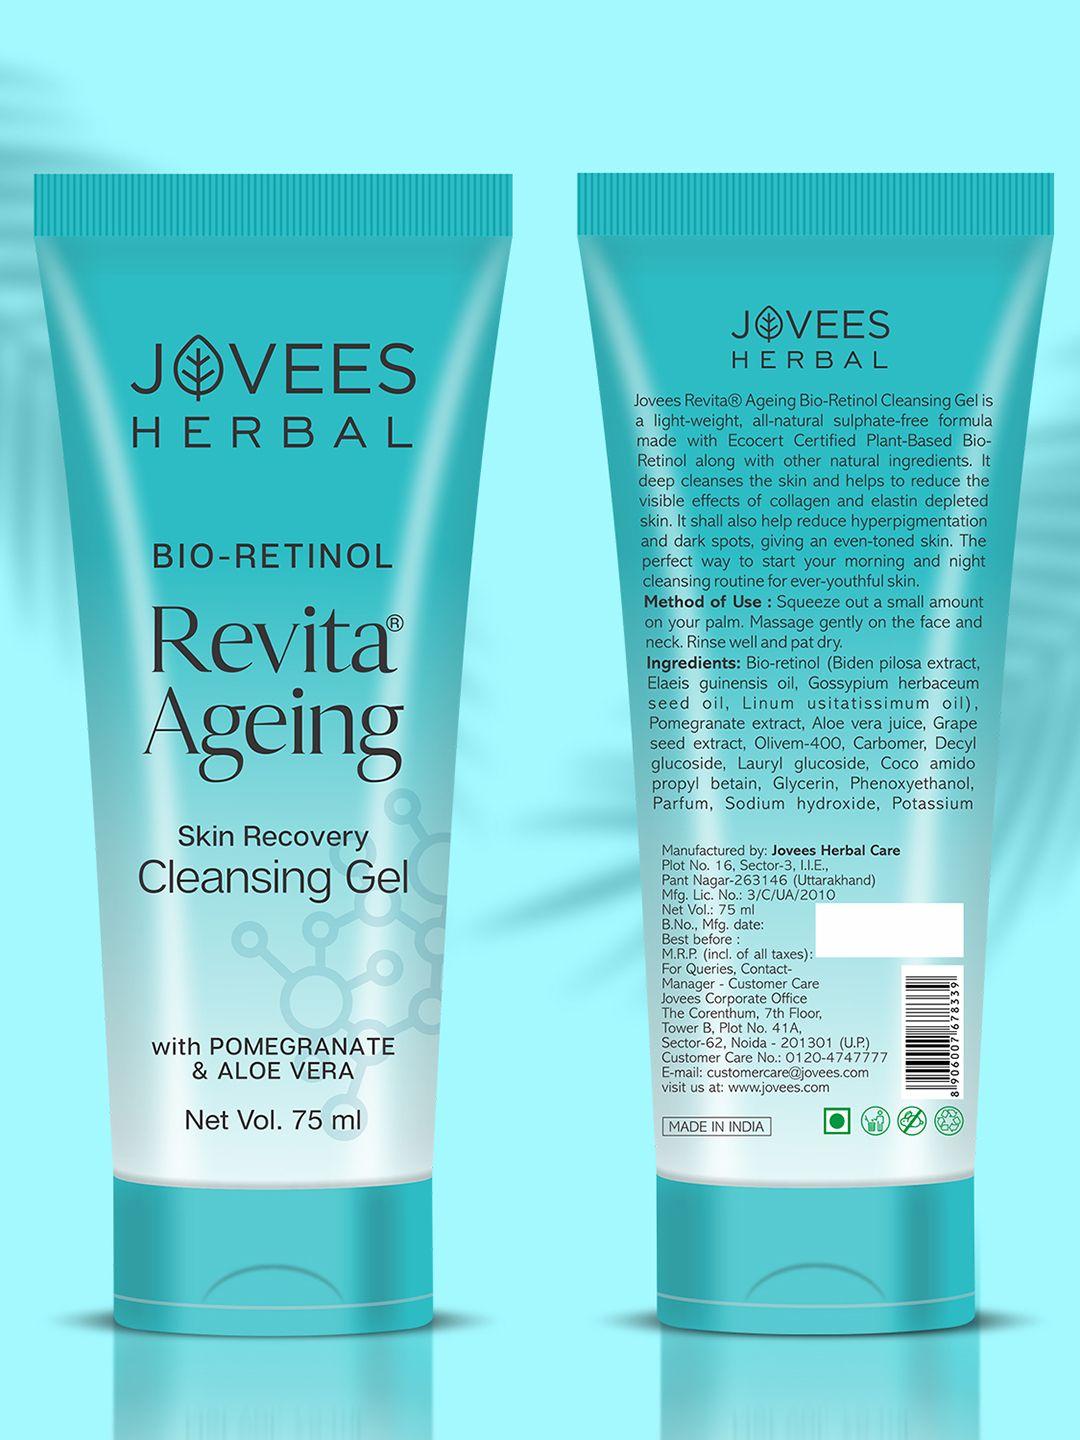 jovees herbal revita ageing skin recovery cleansing gel - 75 ml